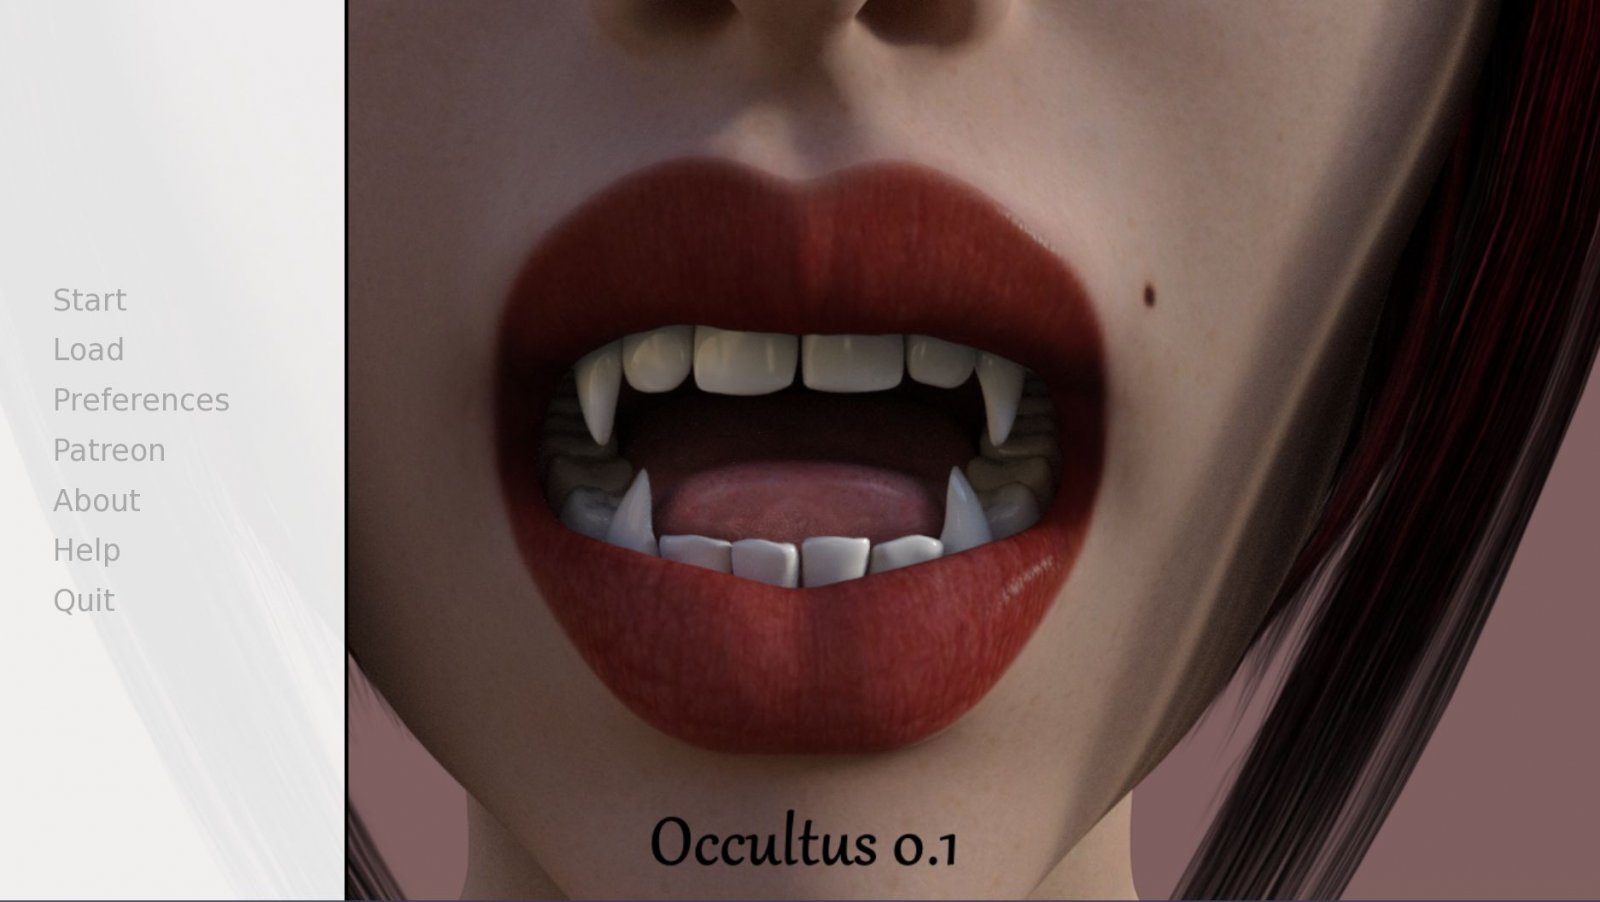 BC Occultus version 0.432